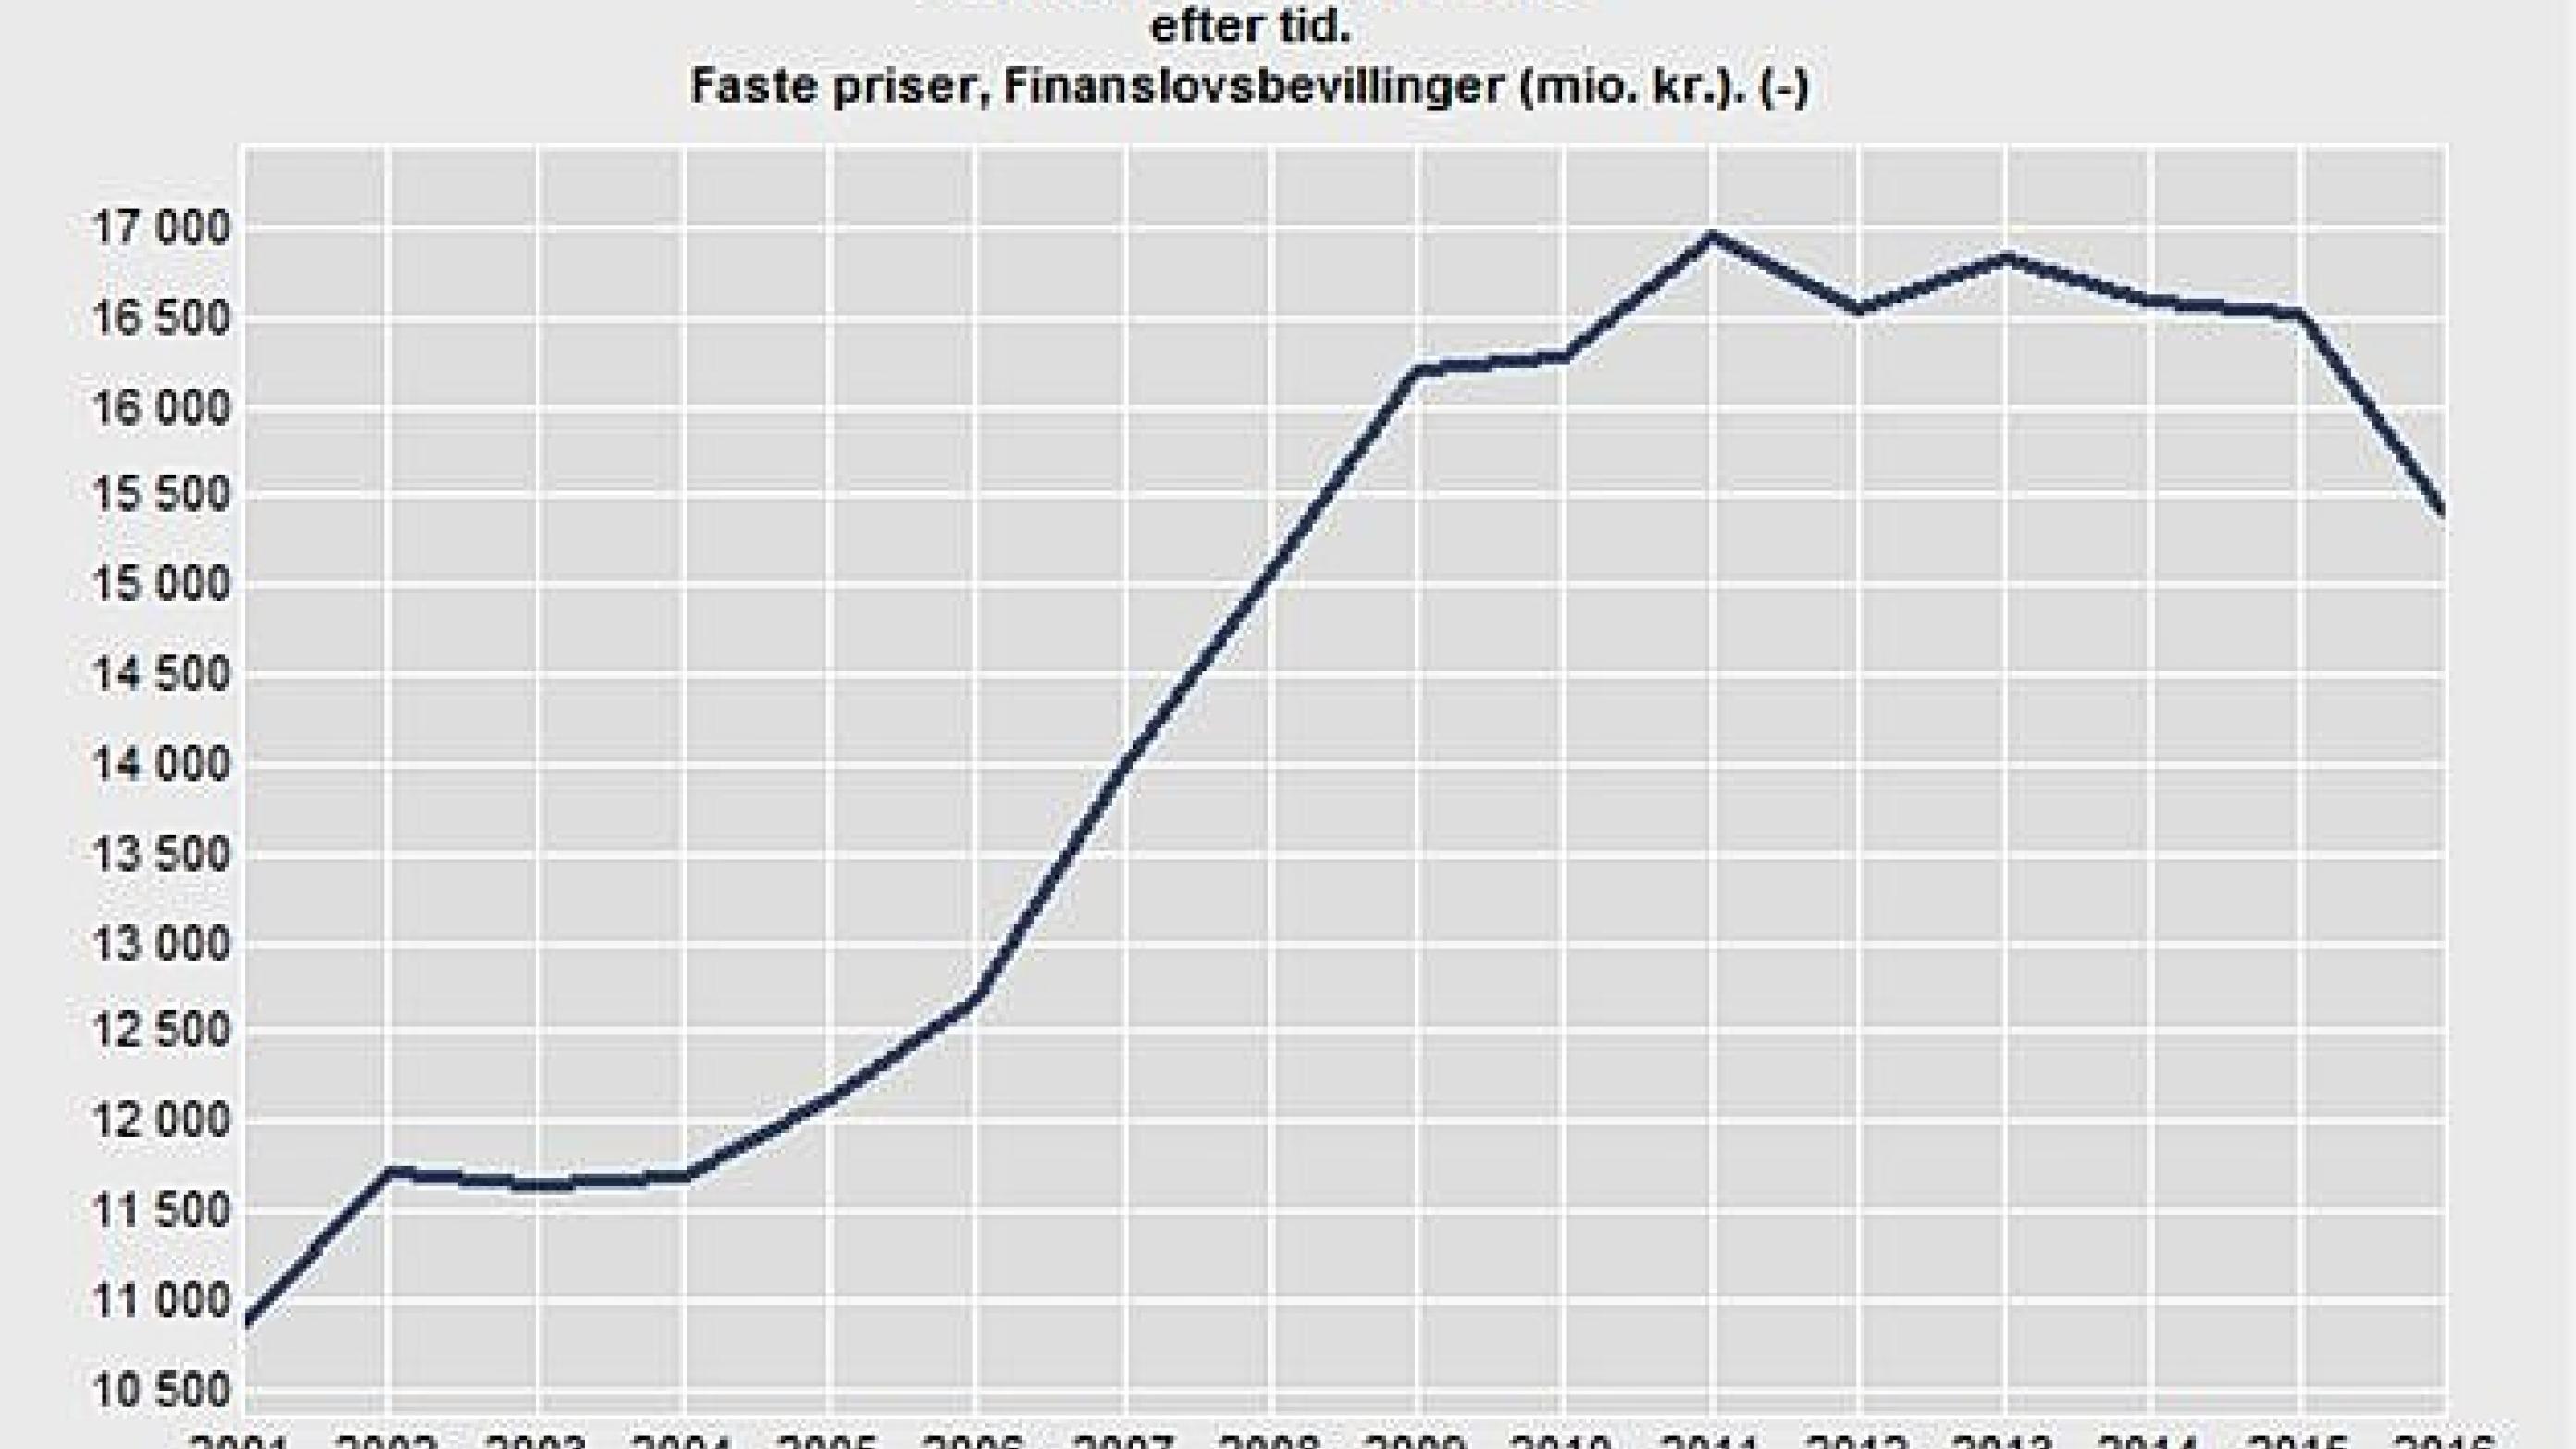 De seneste års finanslove har skåret ned på bevillingerne til forskning. Kilde: Danmarks Statistik.